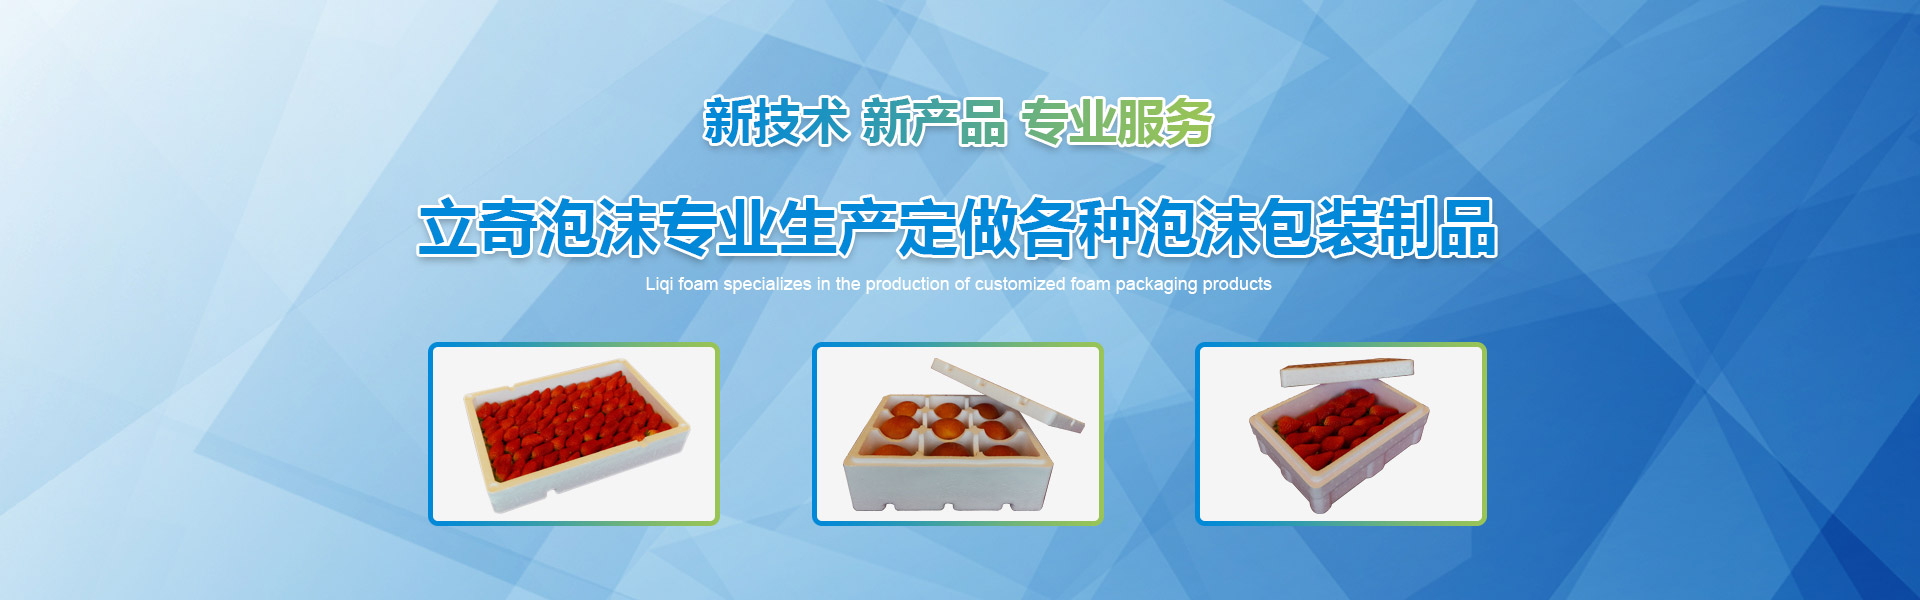 立奇泡沫专业生产定做各种泡沫包装制品